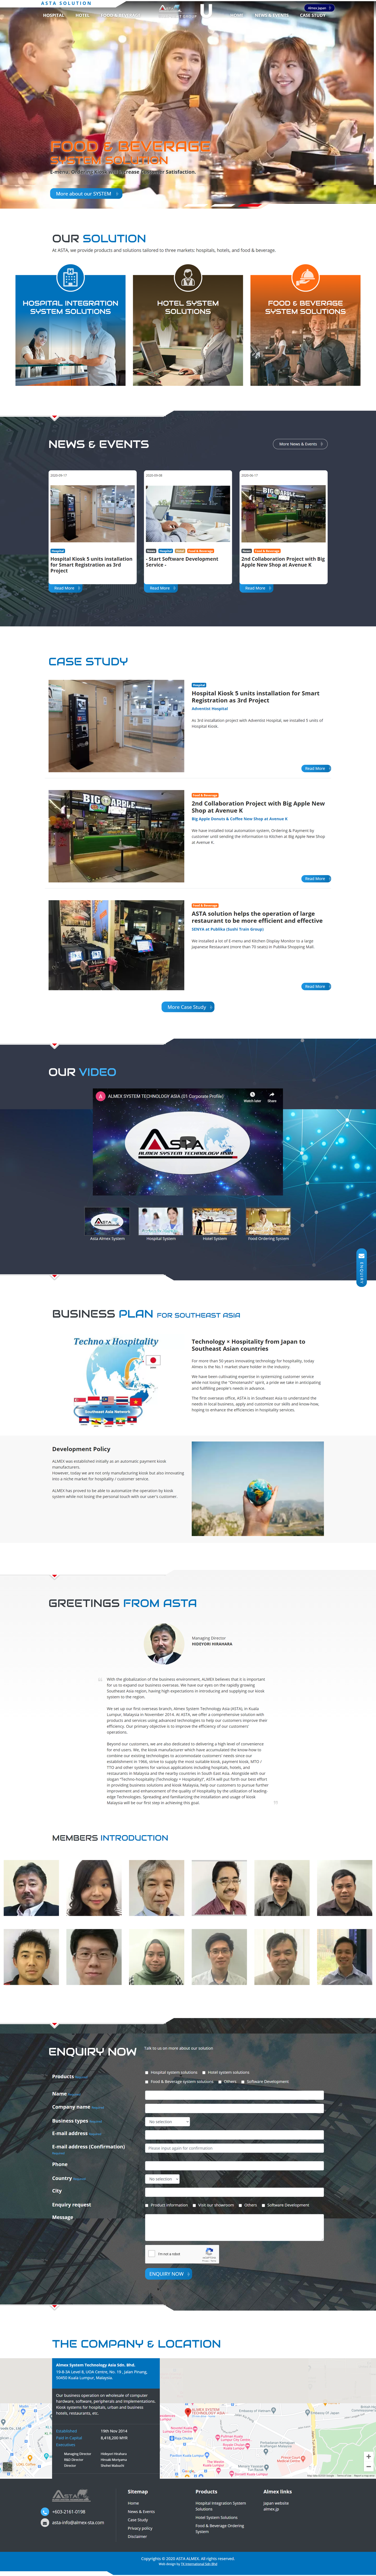 Almex System Technology Asia Sdn. Bhd.